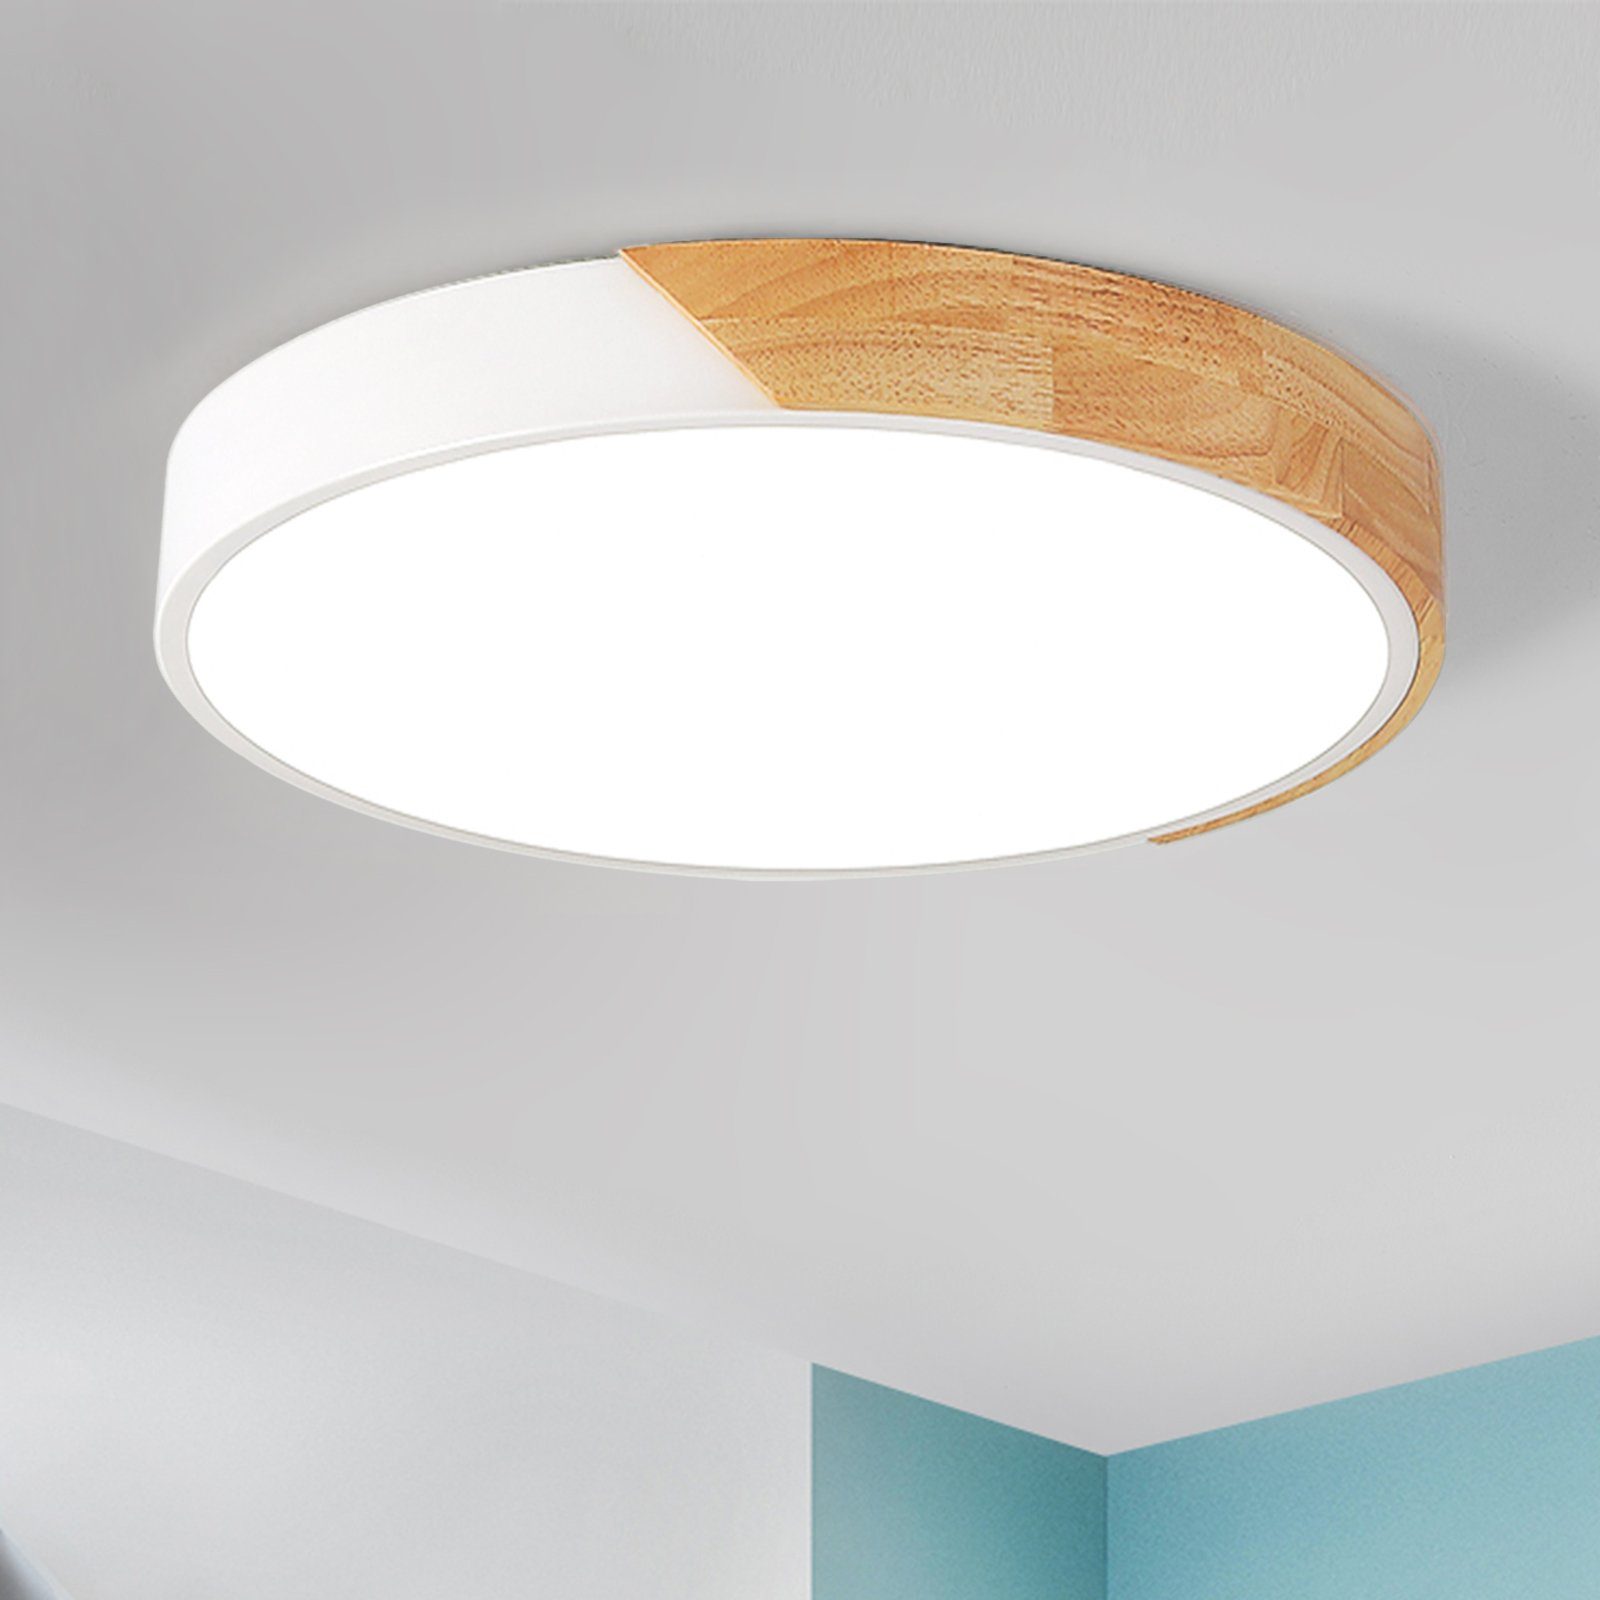 style home LED Deckenleuchte Deckenlampe dimmbar mit Fernbedienung, 36W, Warmweiß bis Kaltweiß 3000K-6000K, Ø40*H4cm für Wohnzimmer Schlafzimmer Küche(Holz)